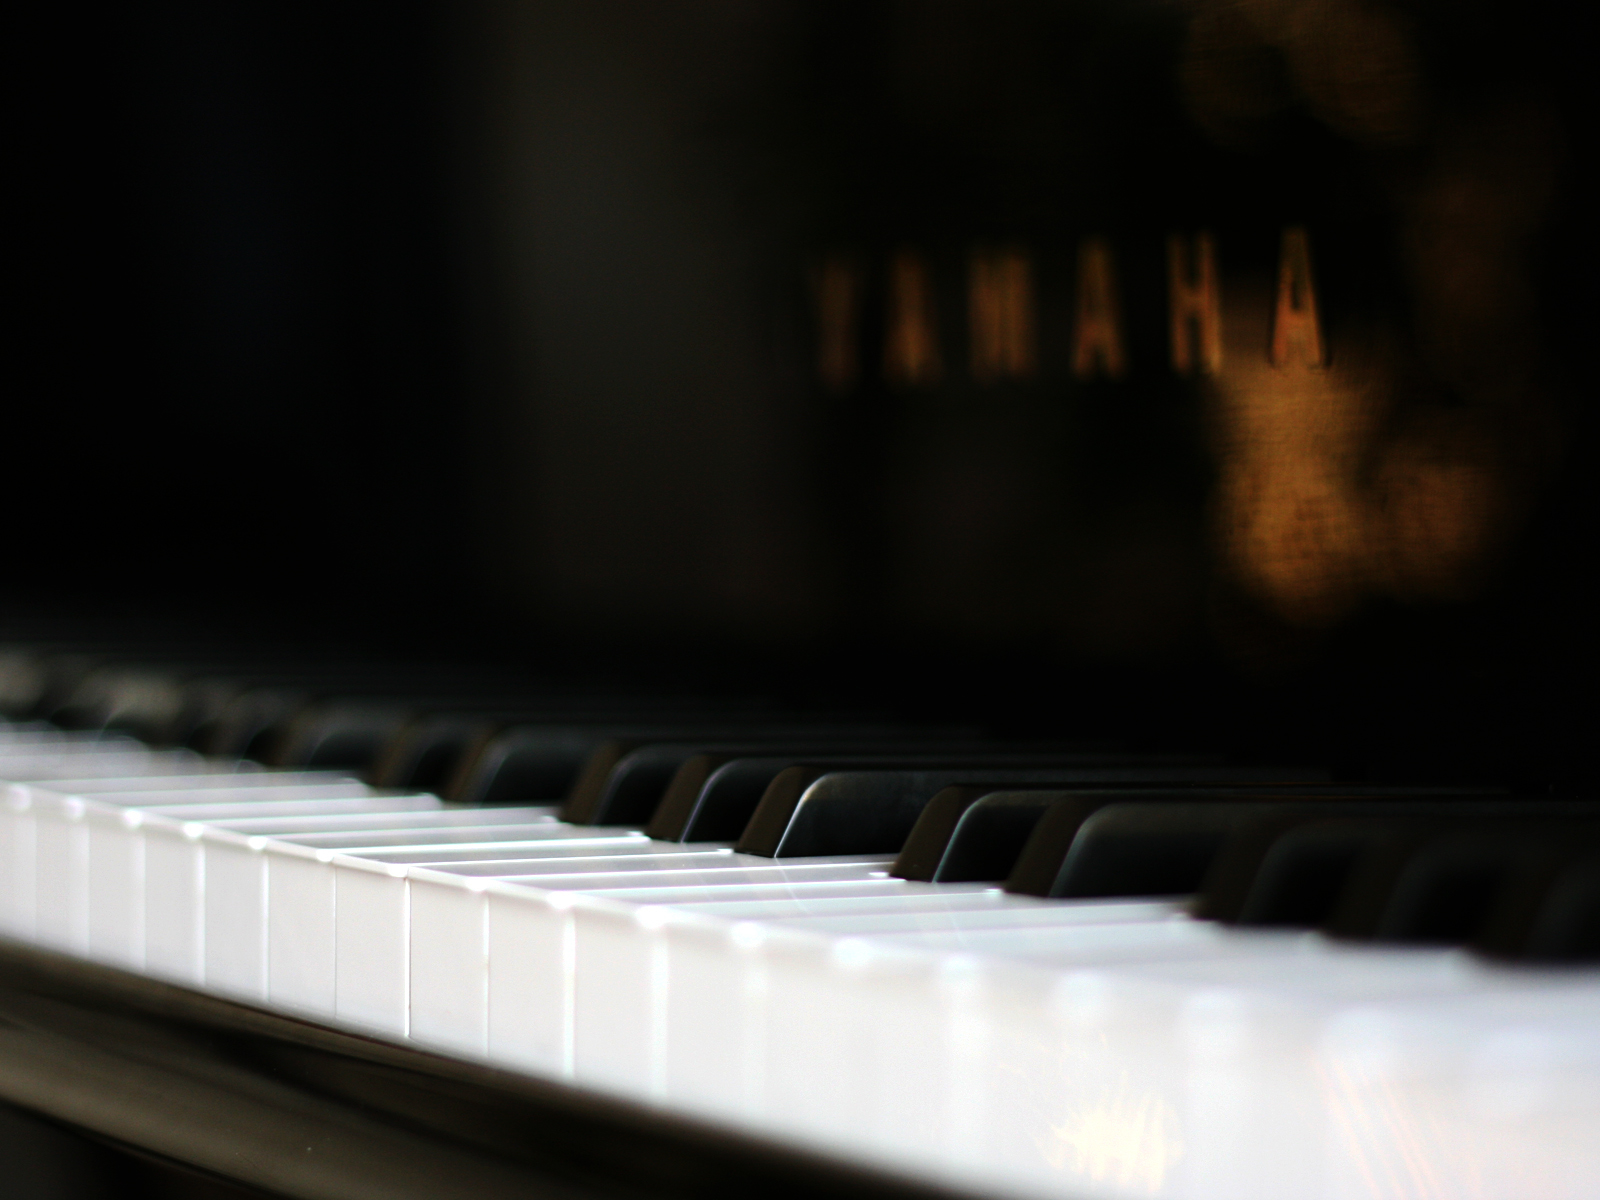 Yamaha Piano Keyboard Close Up Blurred HD Wallpaper